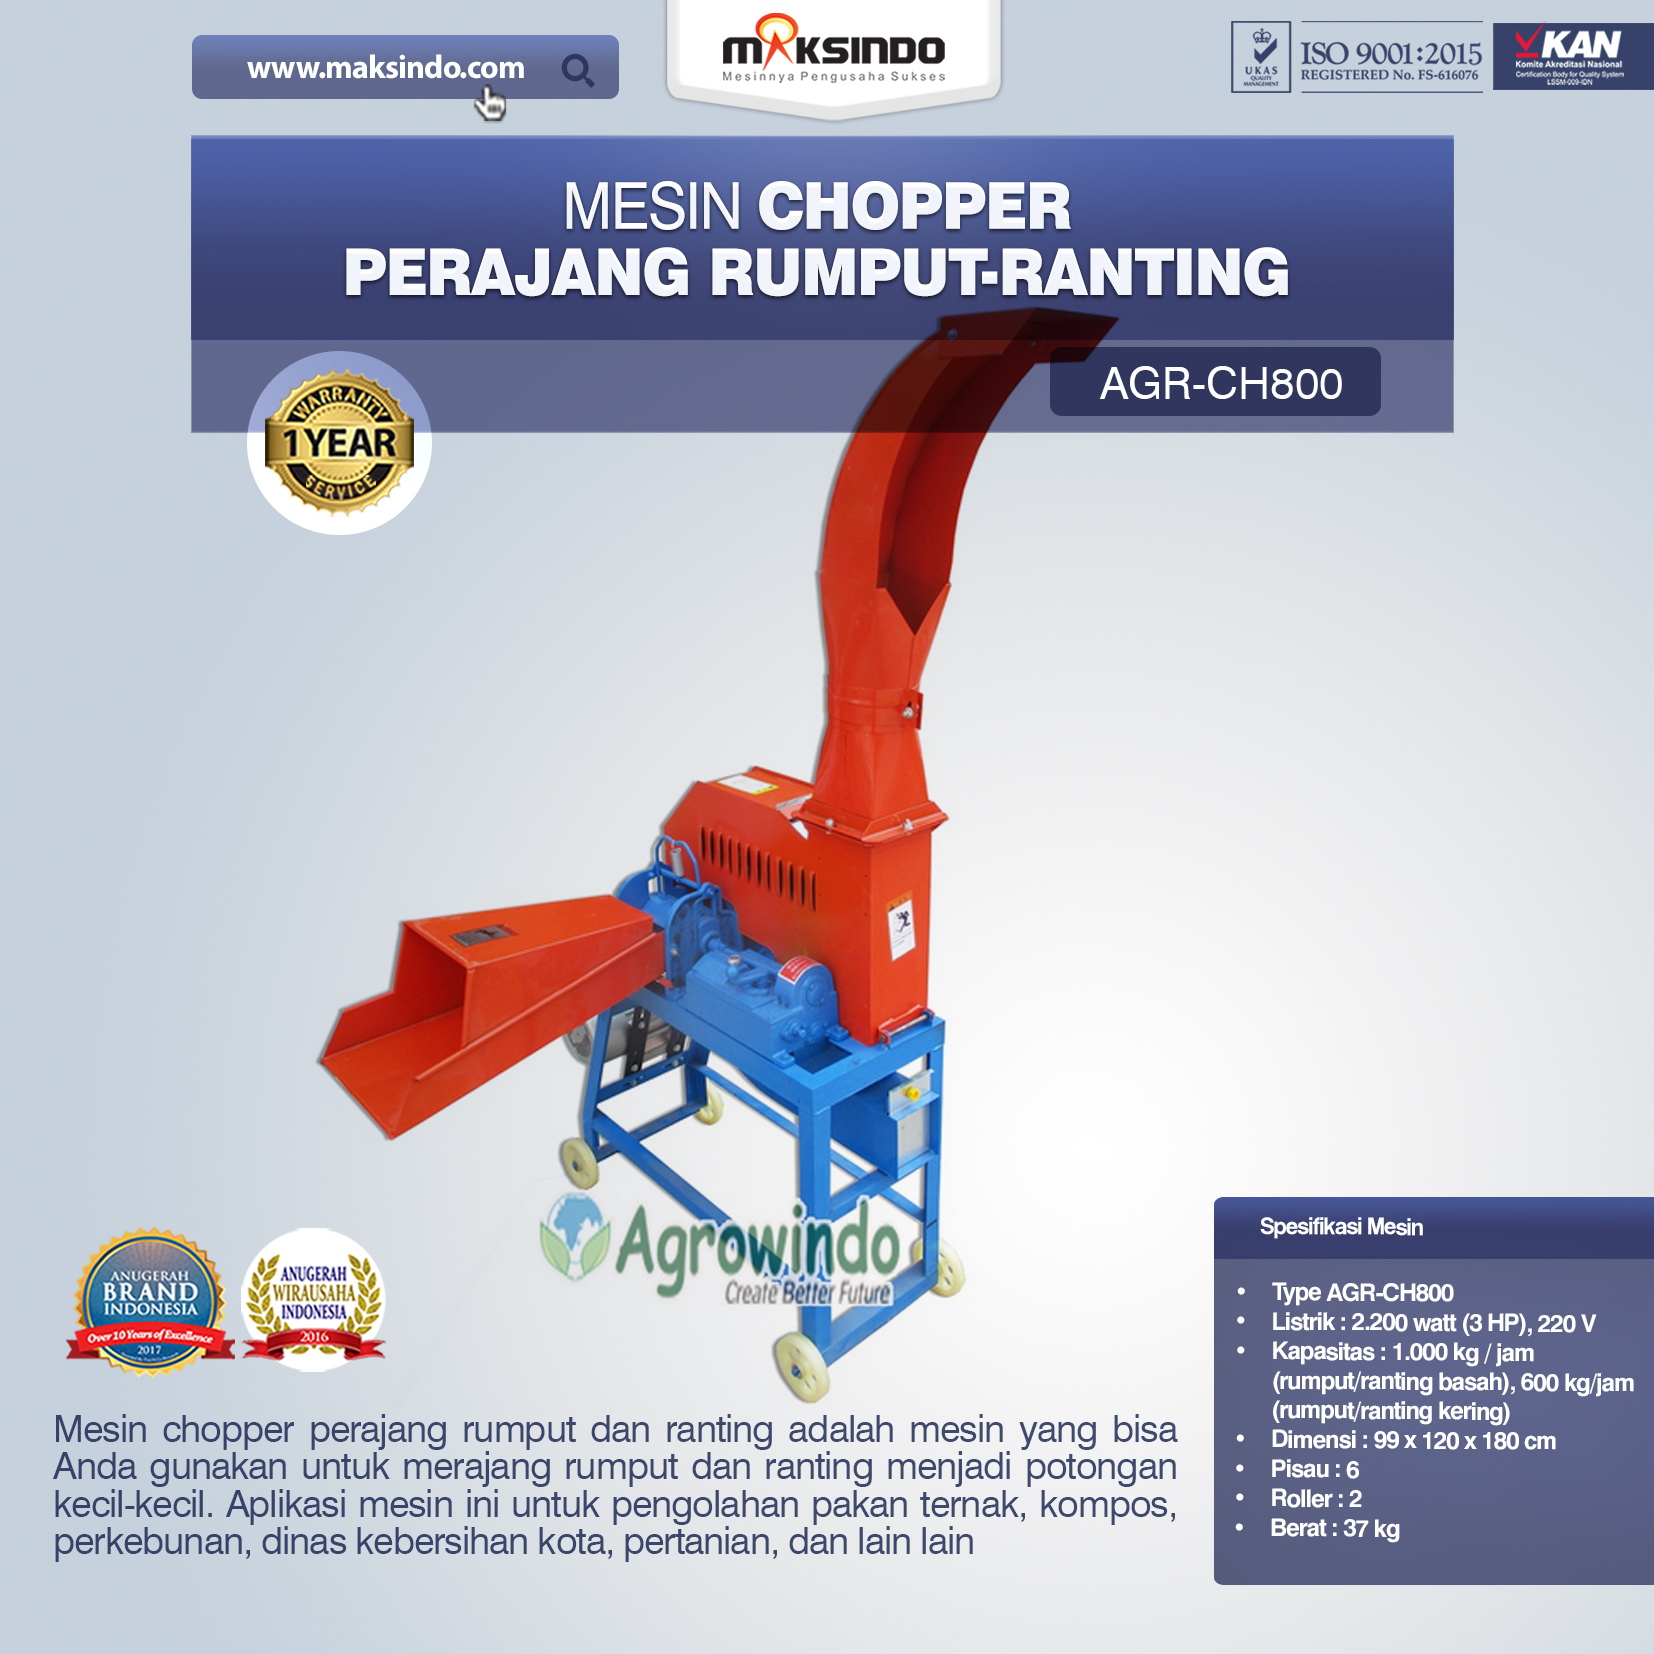 Jual Mesin Chopper Perajang Rumput-Ranting AGR-CH800 di Palembang